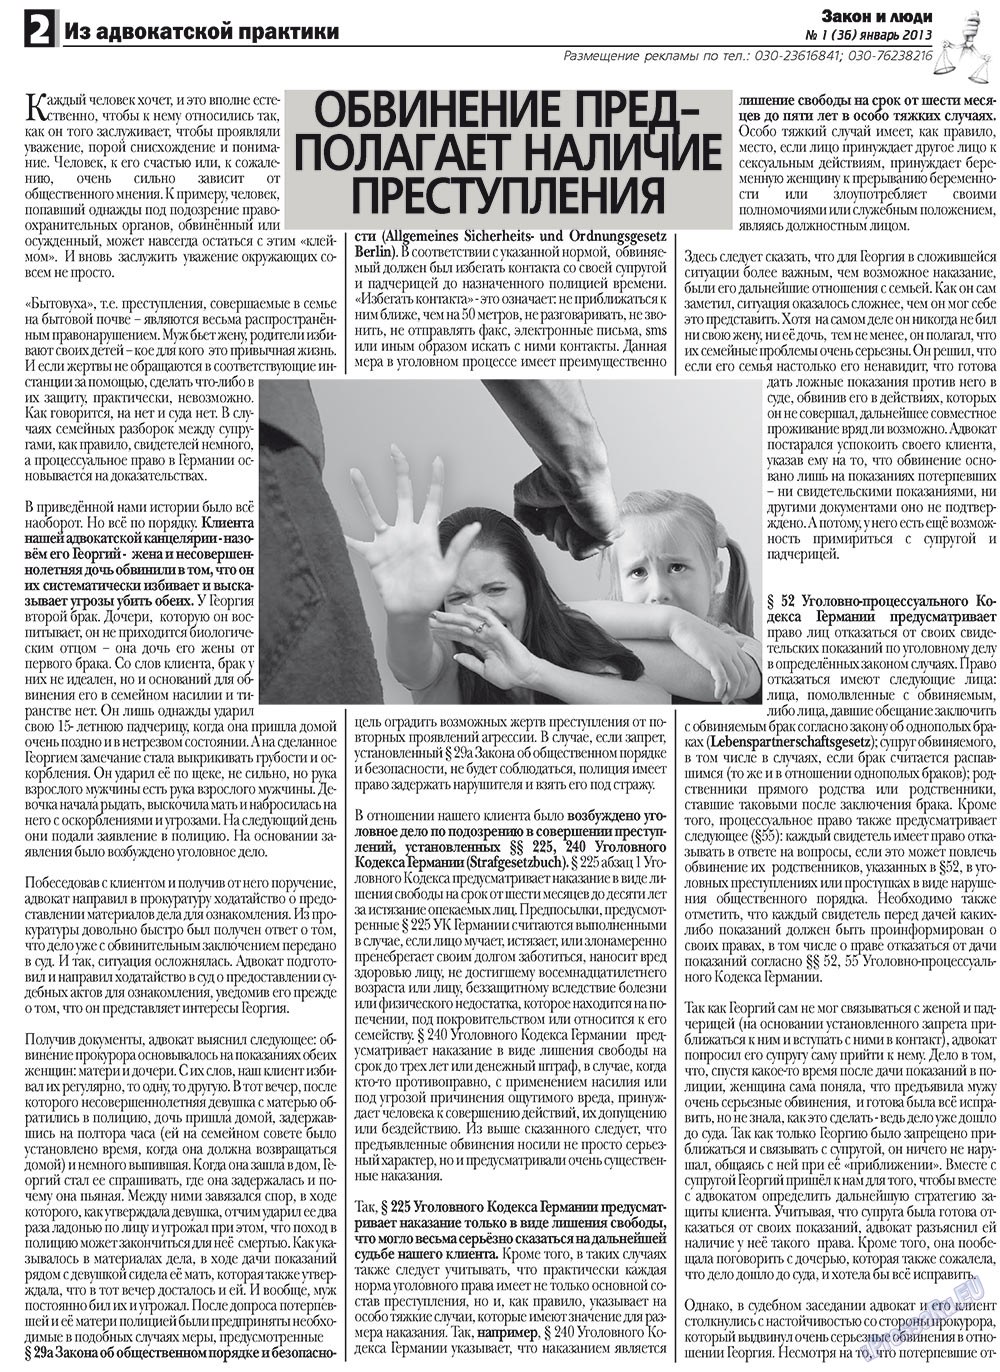 Закон и люди, газета. 2013 №1 стр.2